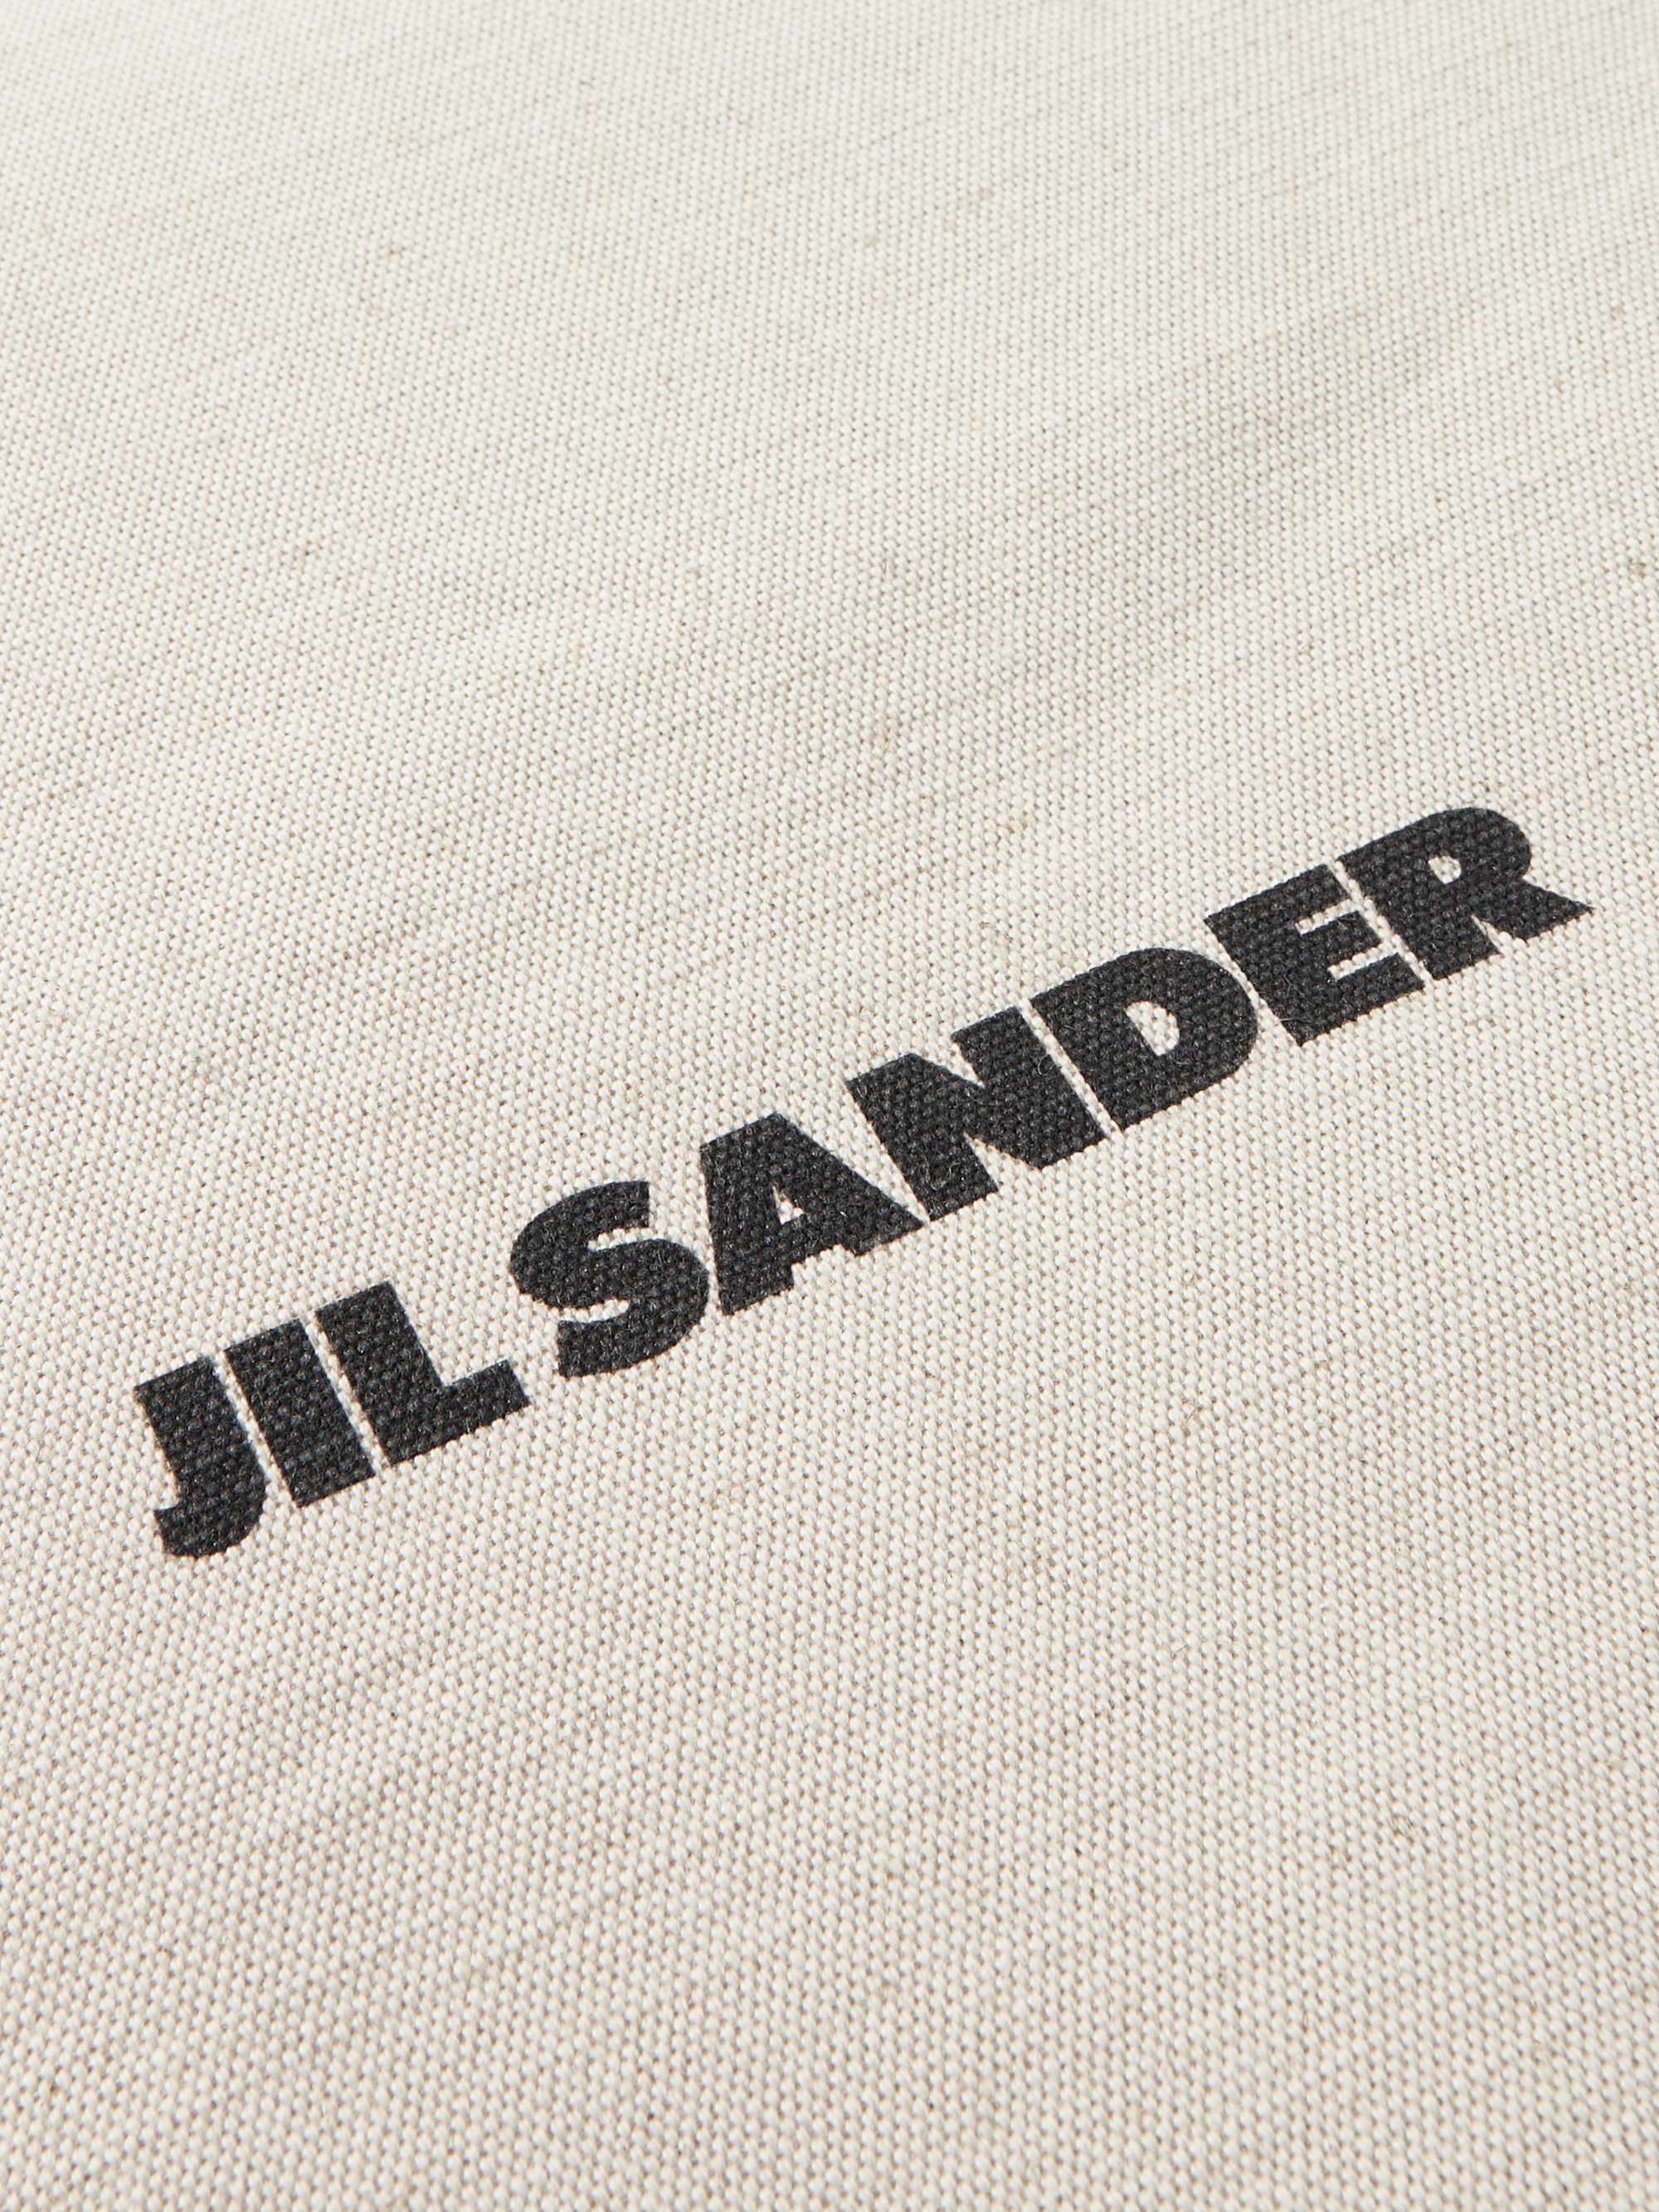 JIL SANDER Large Leather-Trimmed Logo-Print Canvas Tote Bag